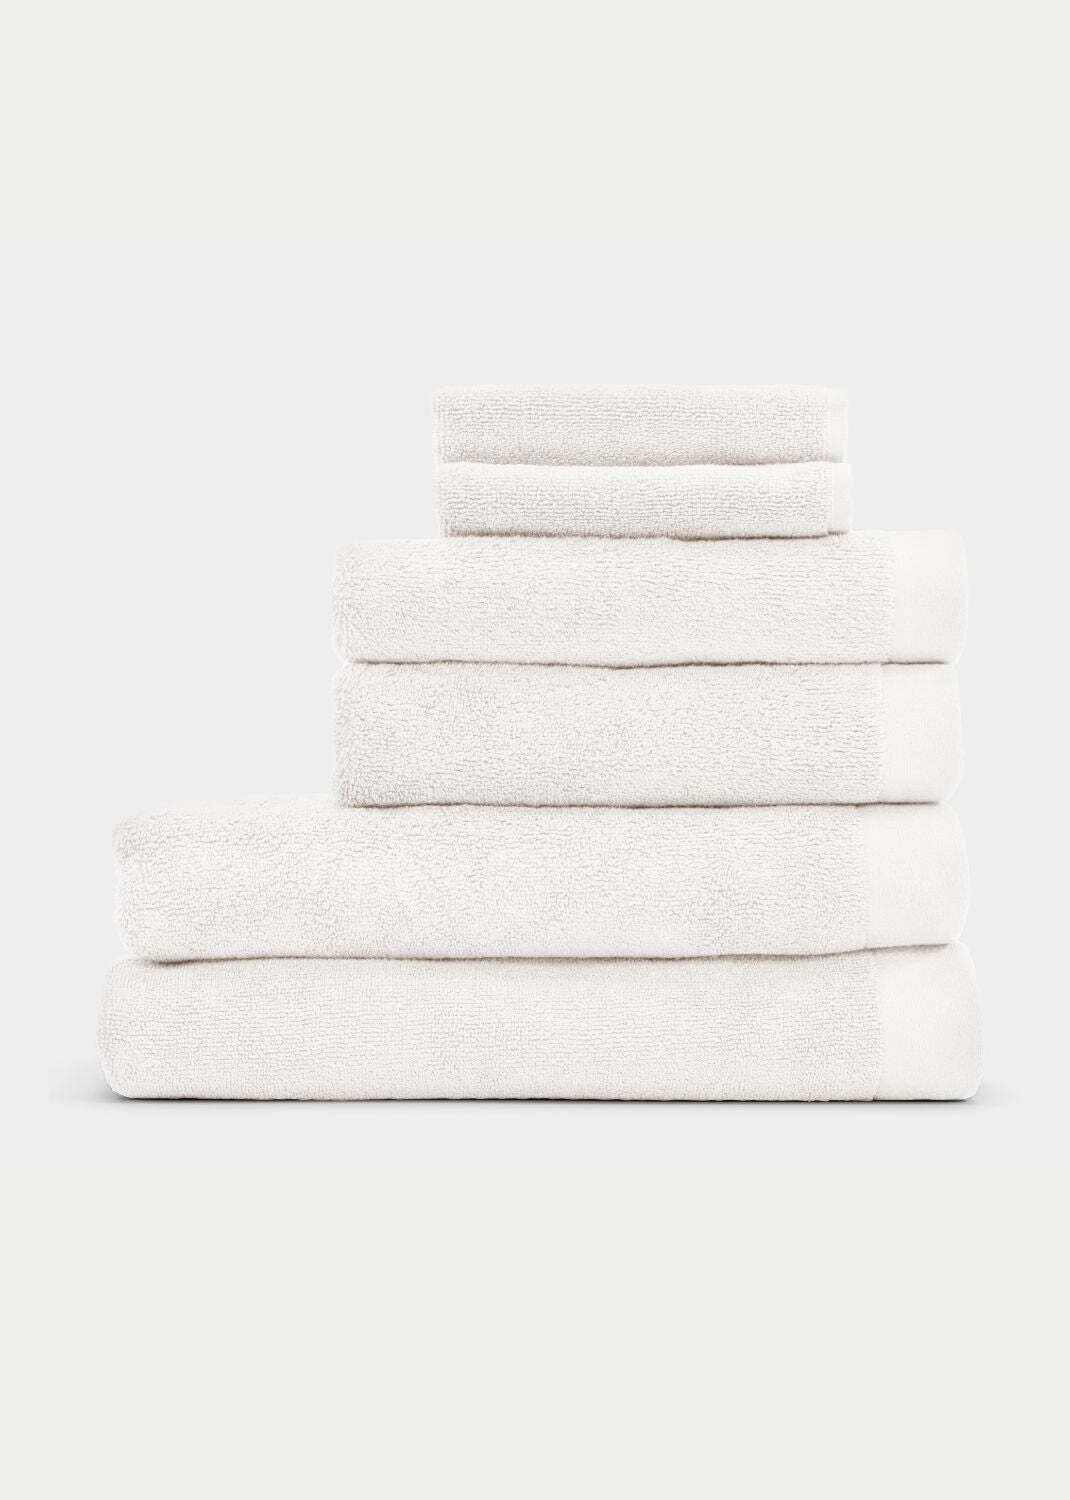 Handtuch Baumwolle Weiß 50 x 70 cm 0